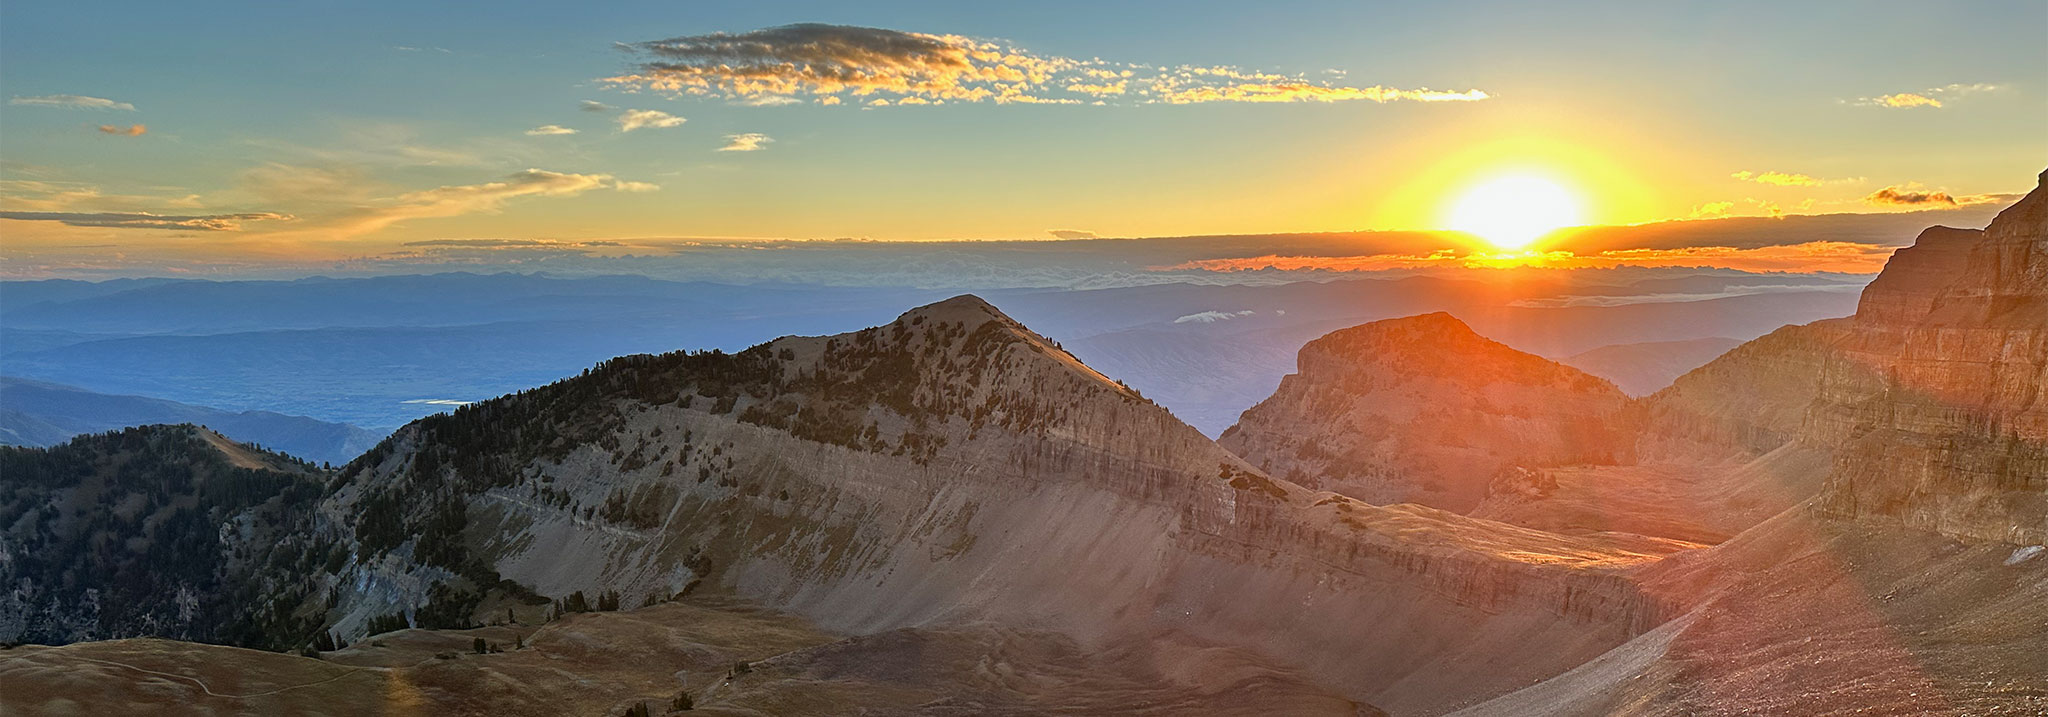 Mount Timpanogos Sunrise from Saddle